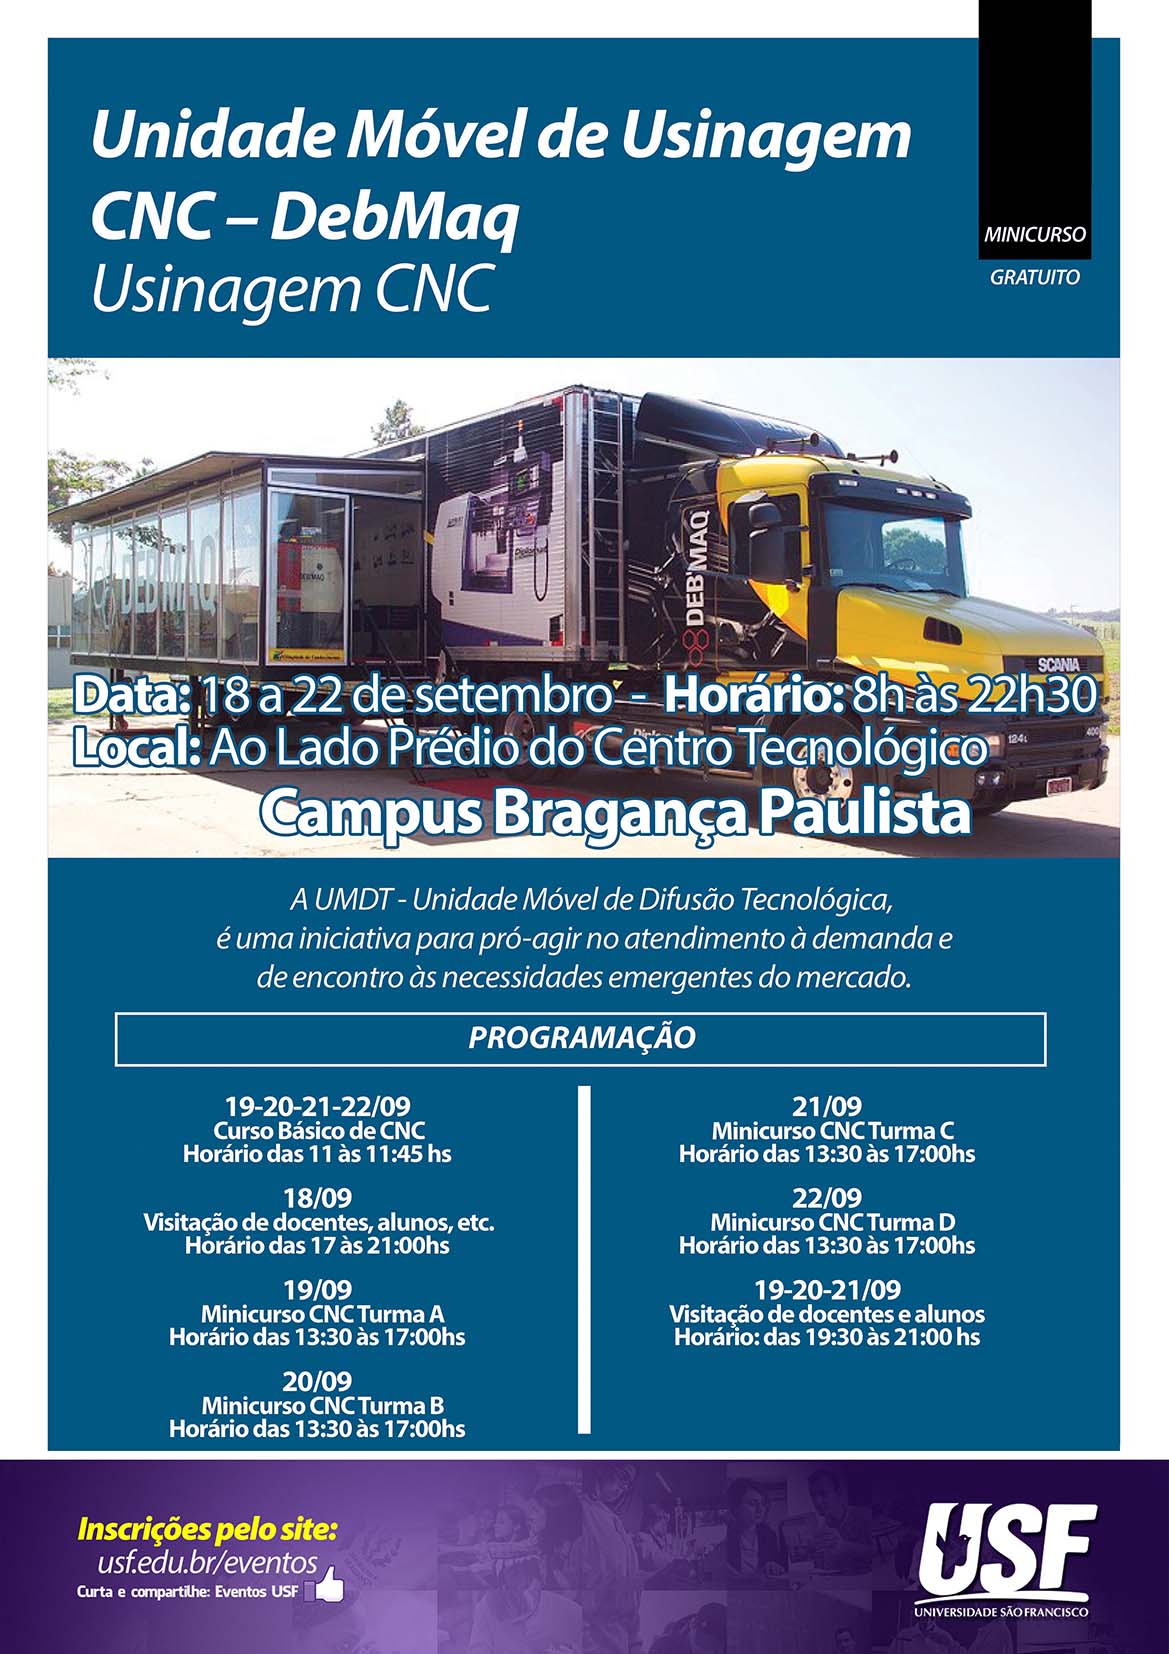 Unidade Móvel de Usinagem CNC – DebMaq no Campus Bragança Paulista